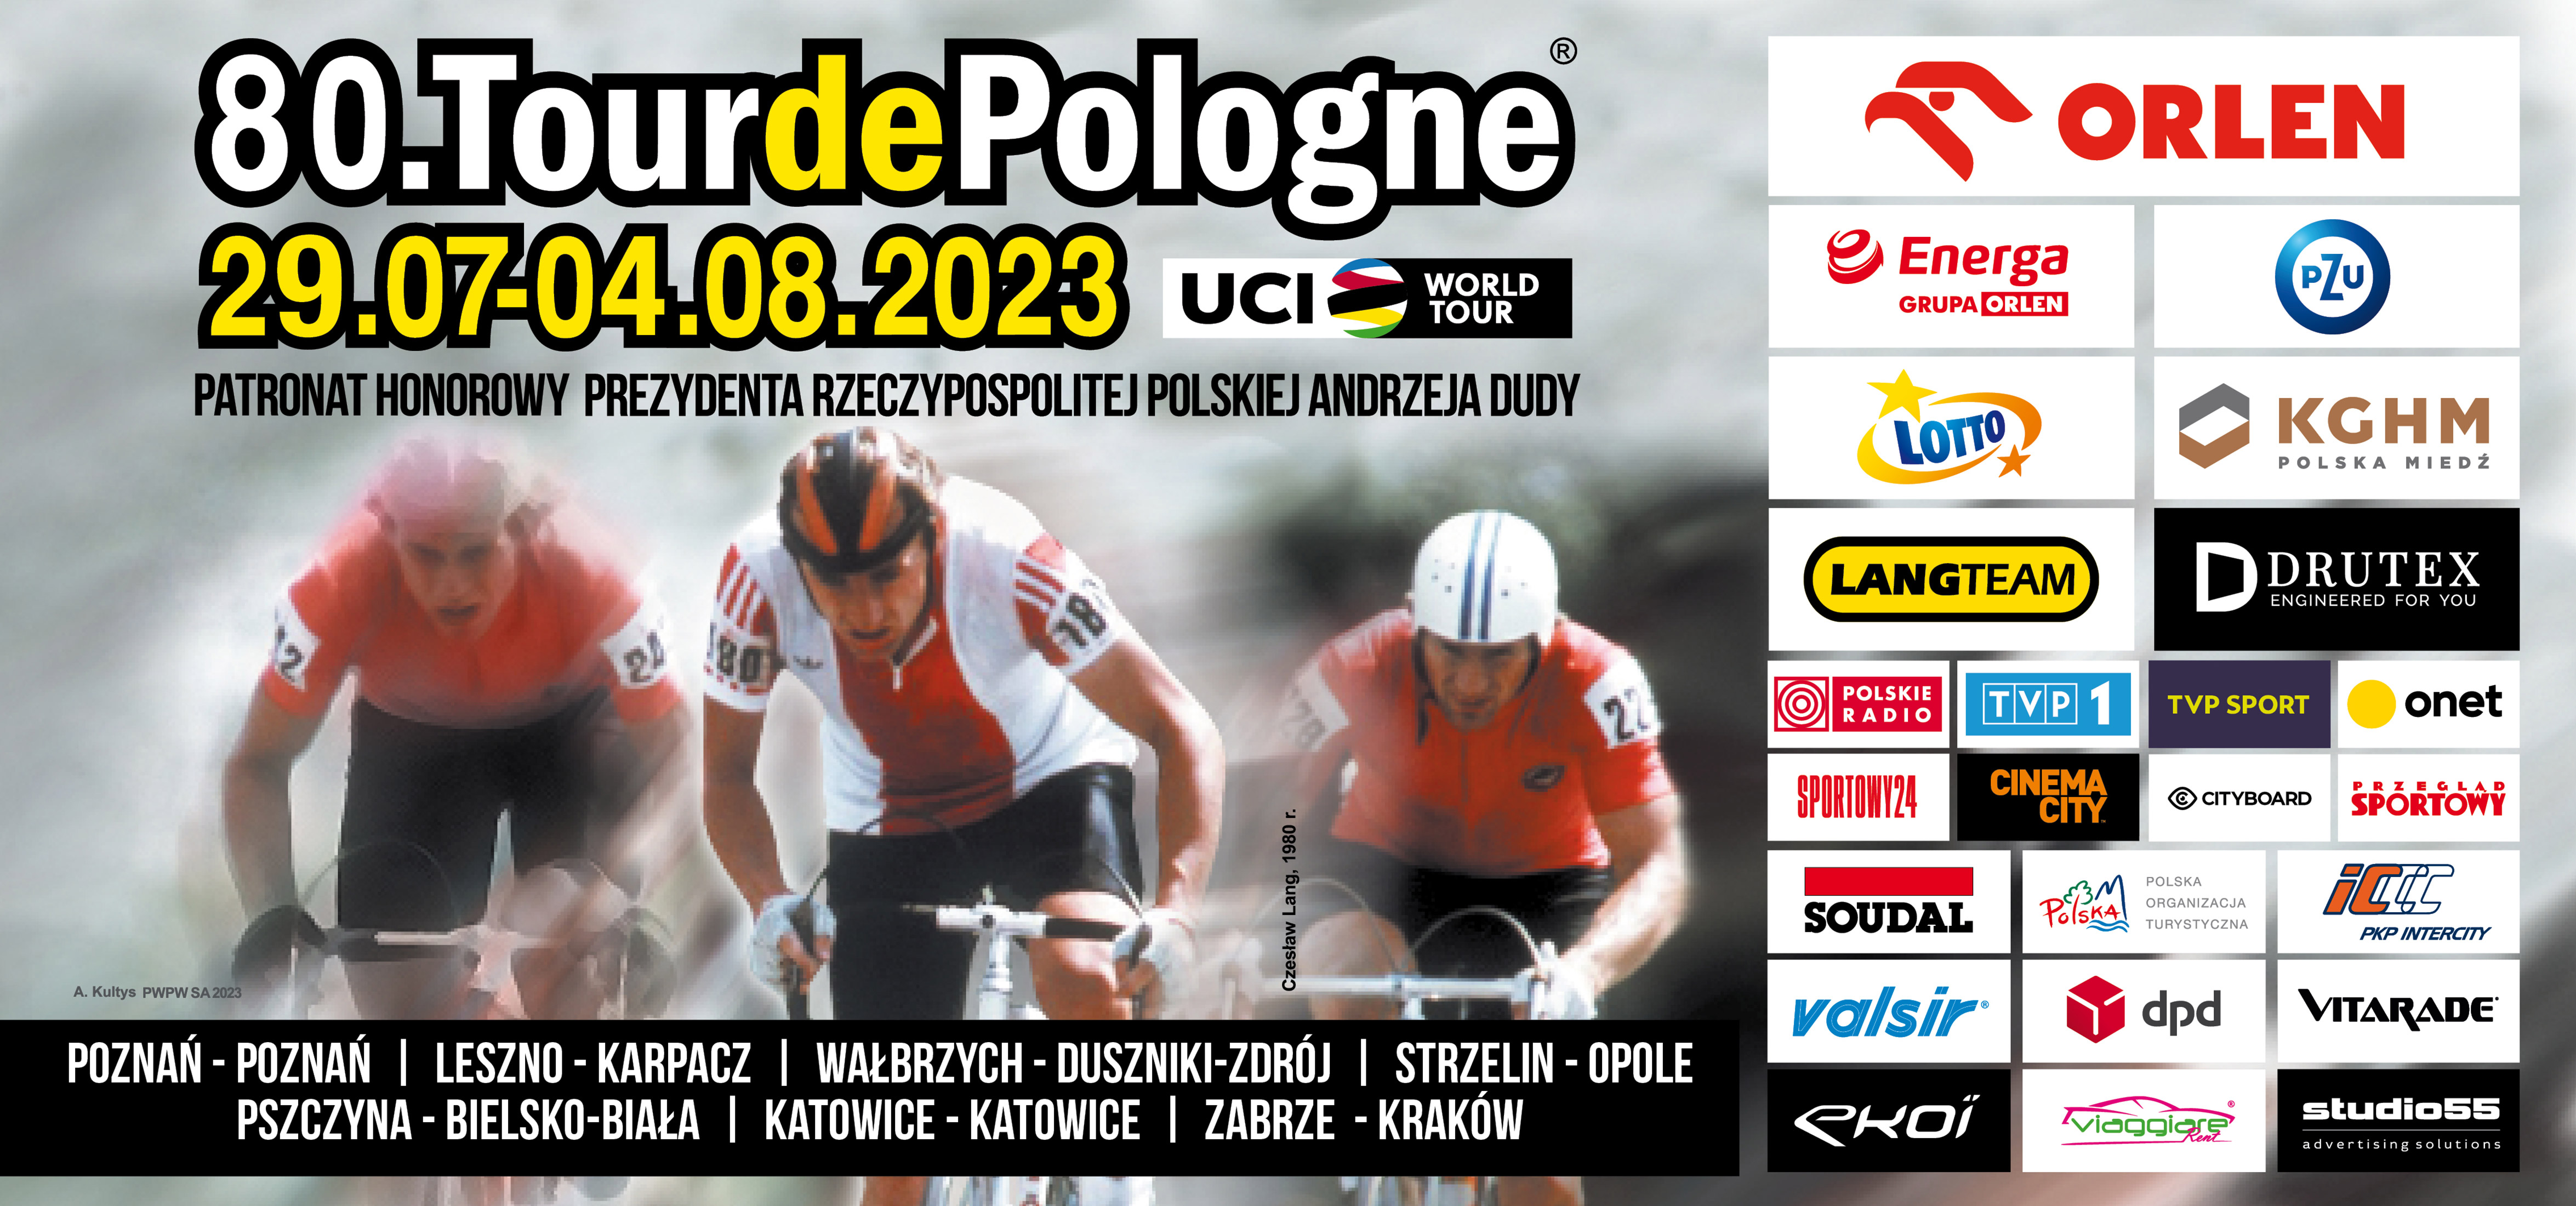 Tour de Pologne startuje za miesiąc. Przez Opole kolarze przejadą 1 sierpnia